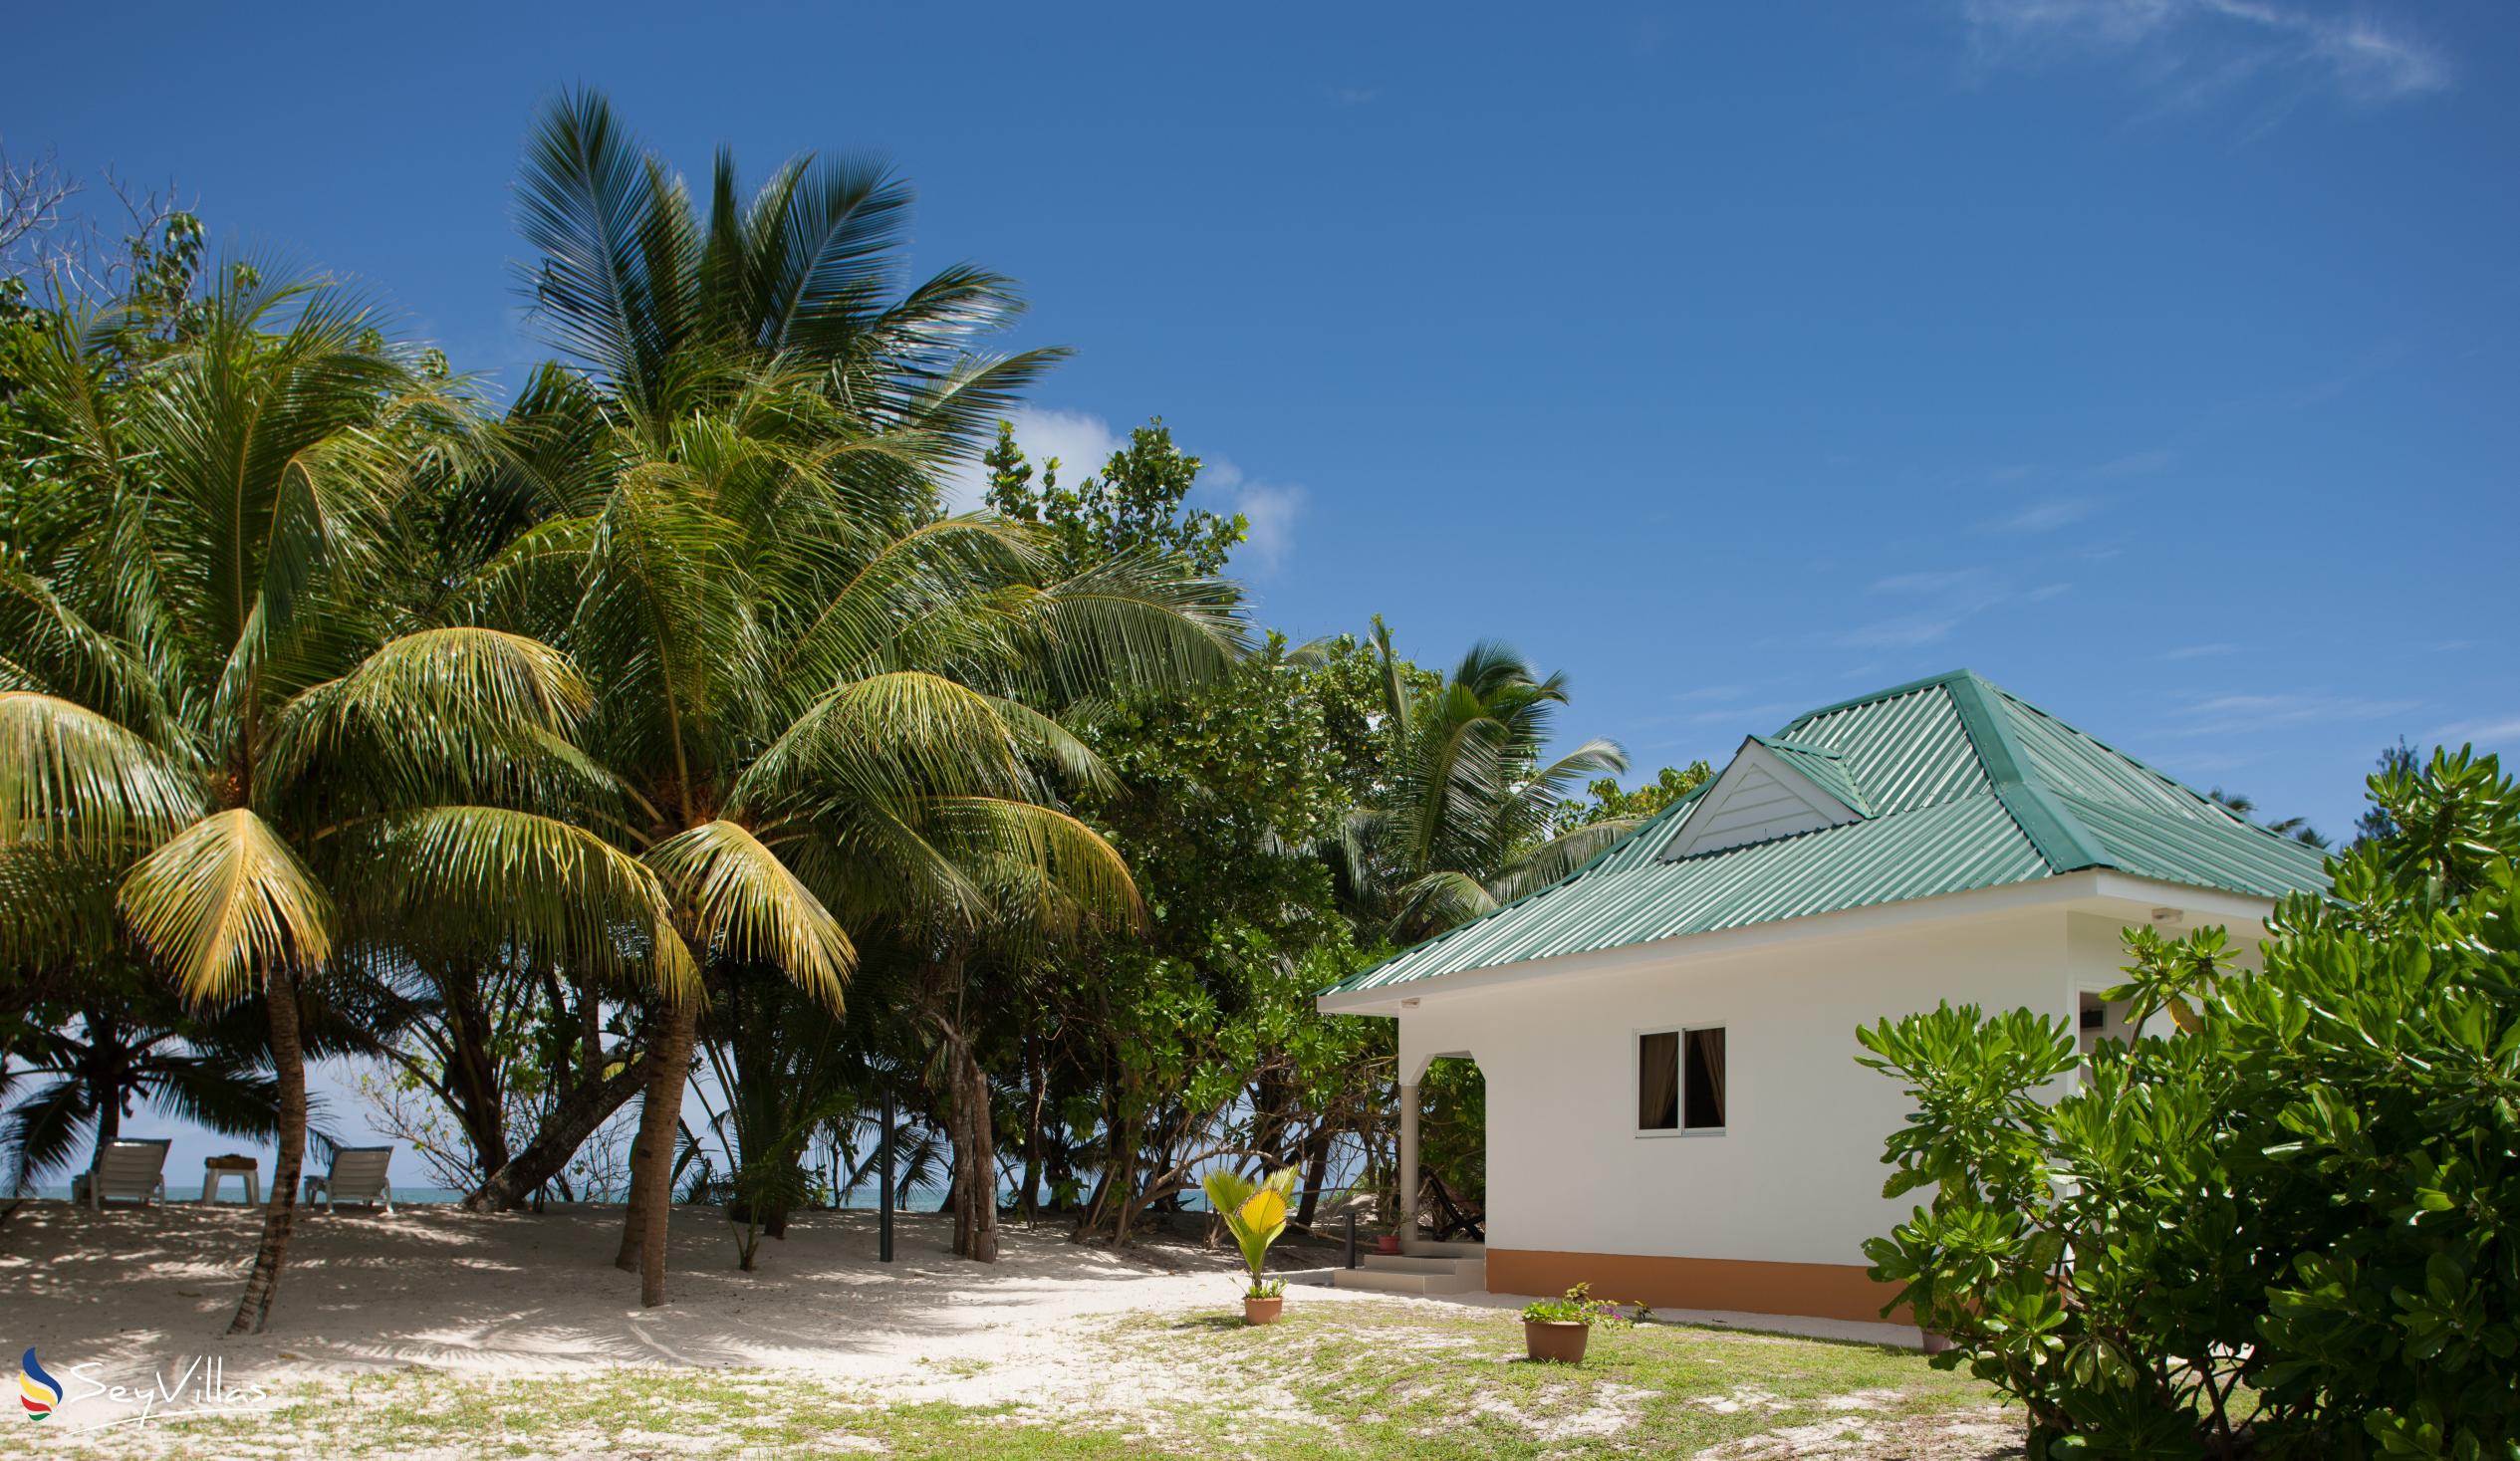 Foto 1: Villa Admiral - Aussenbereich - Praslin (Seychellen)